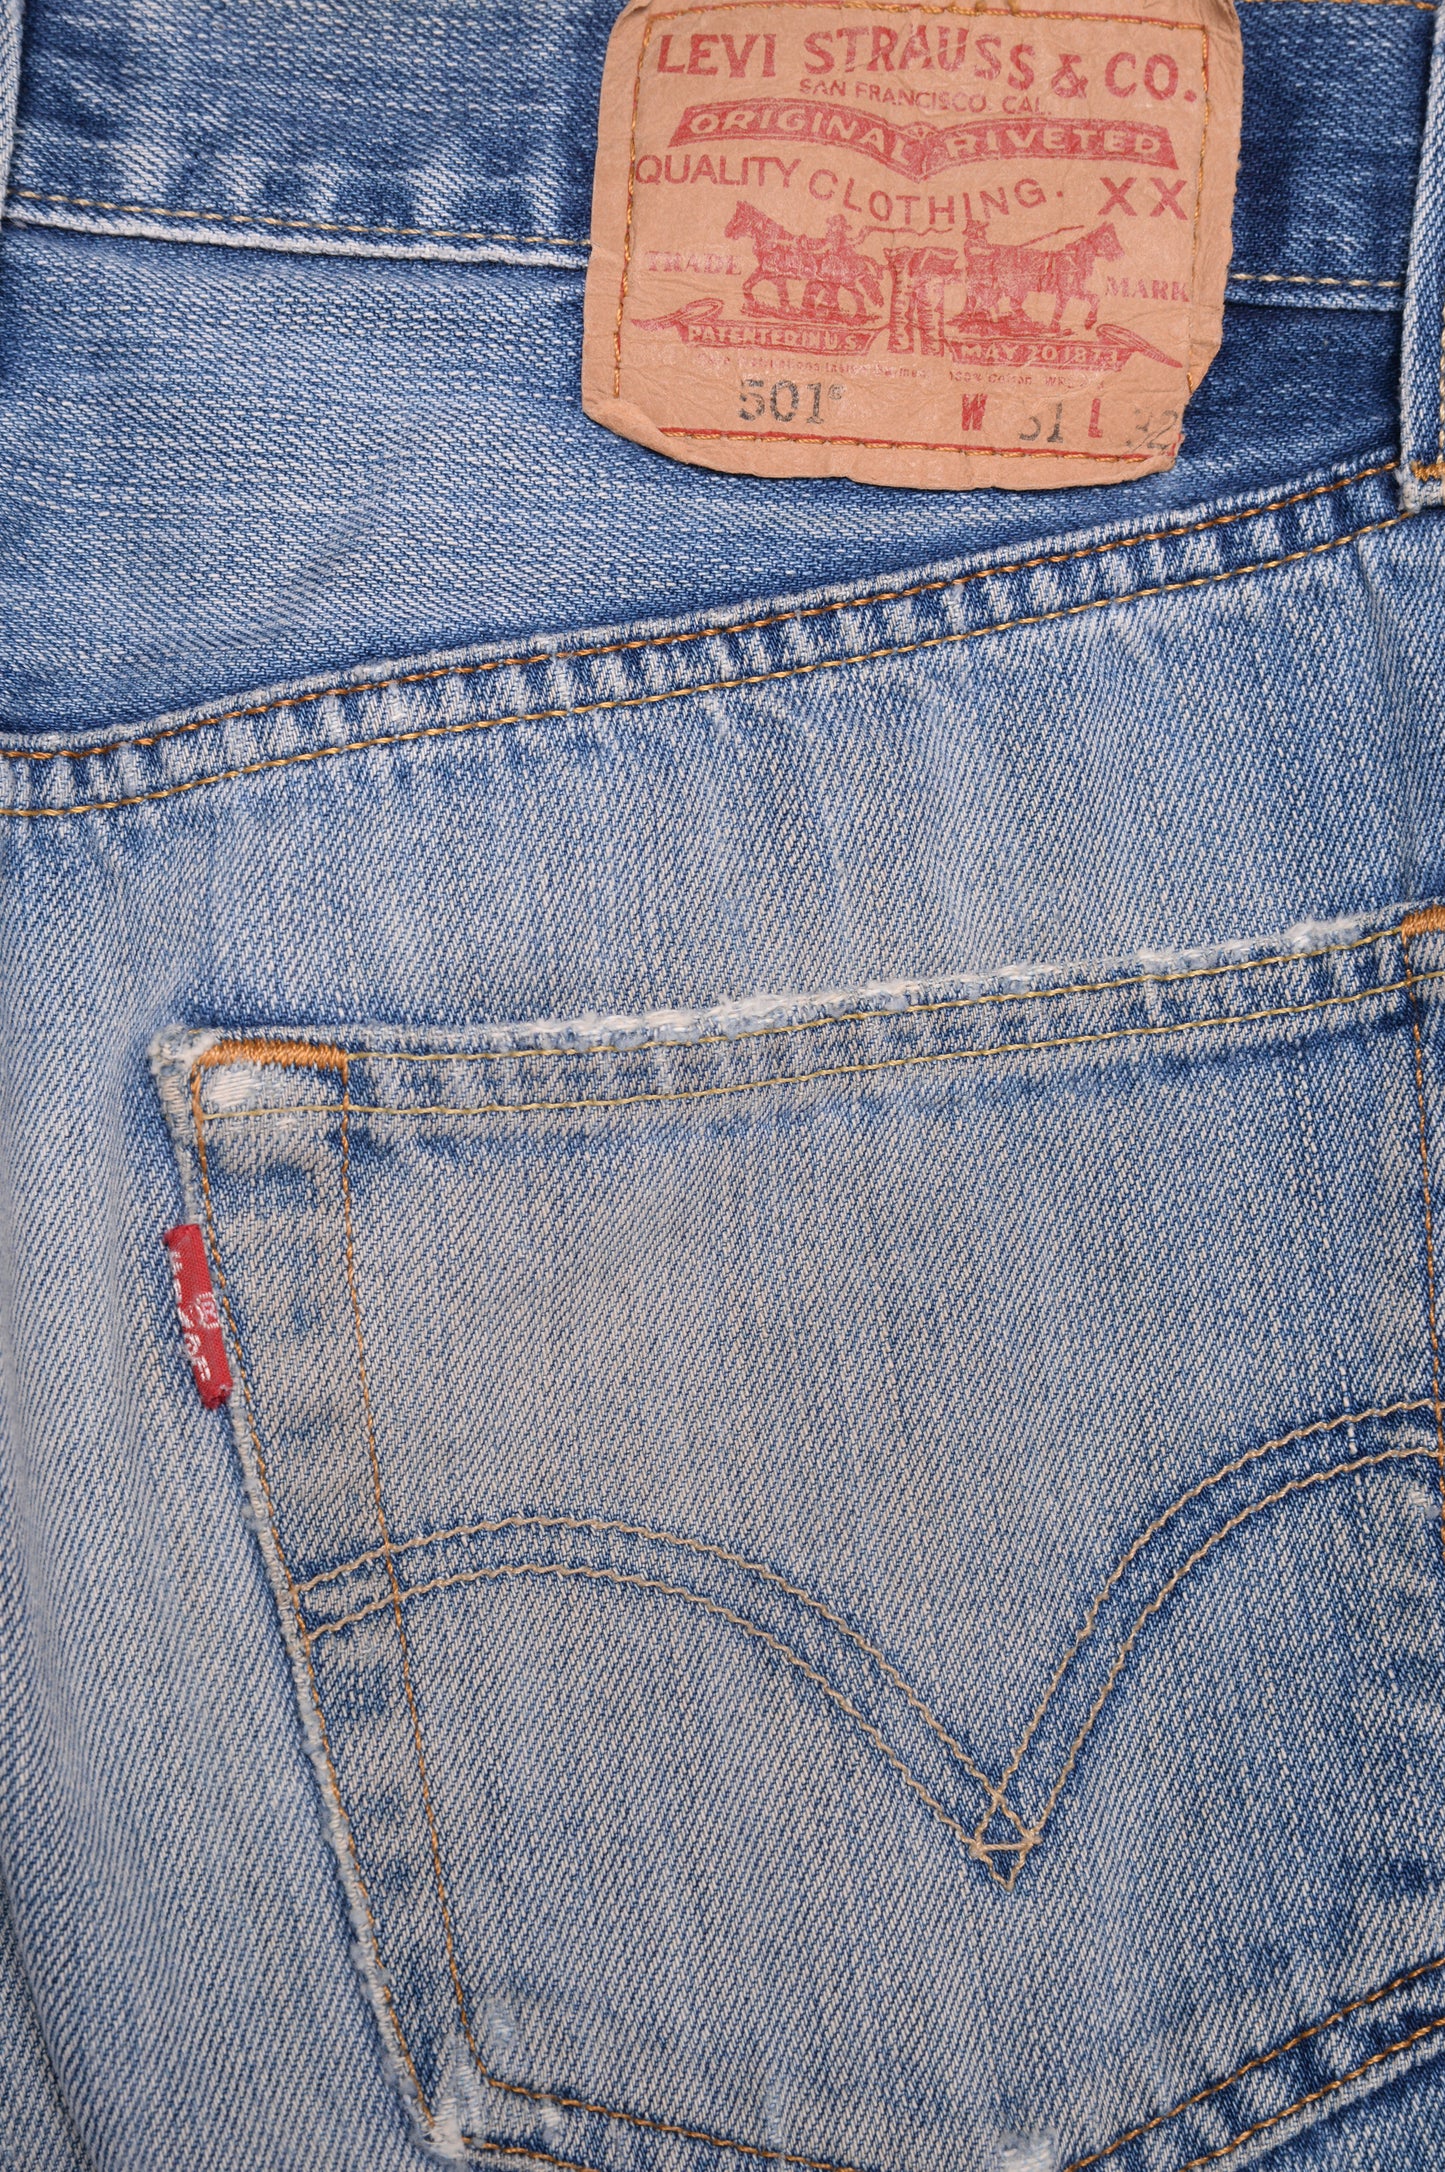 Faded Straight 501 Levi's Jeans 30W x 31L